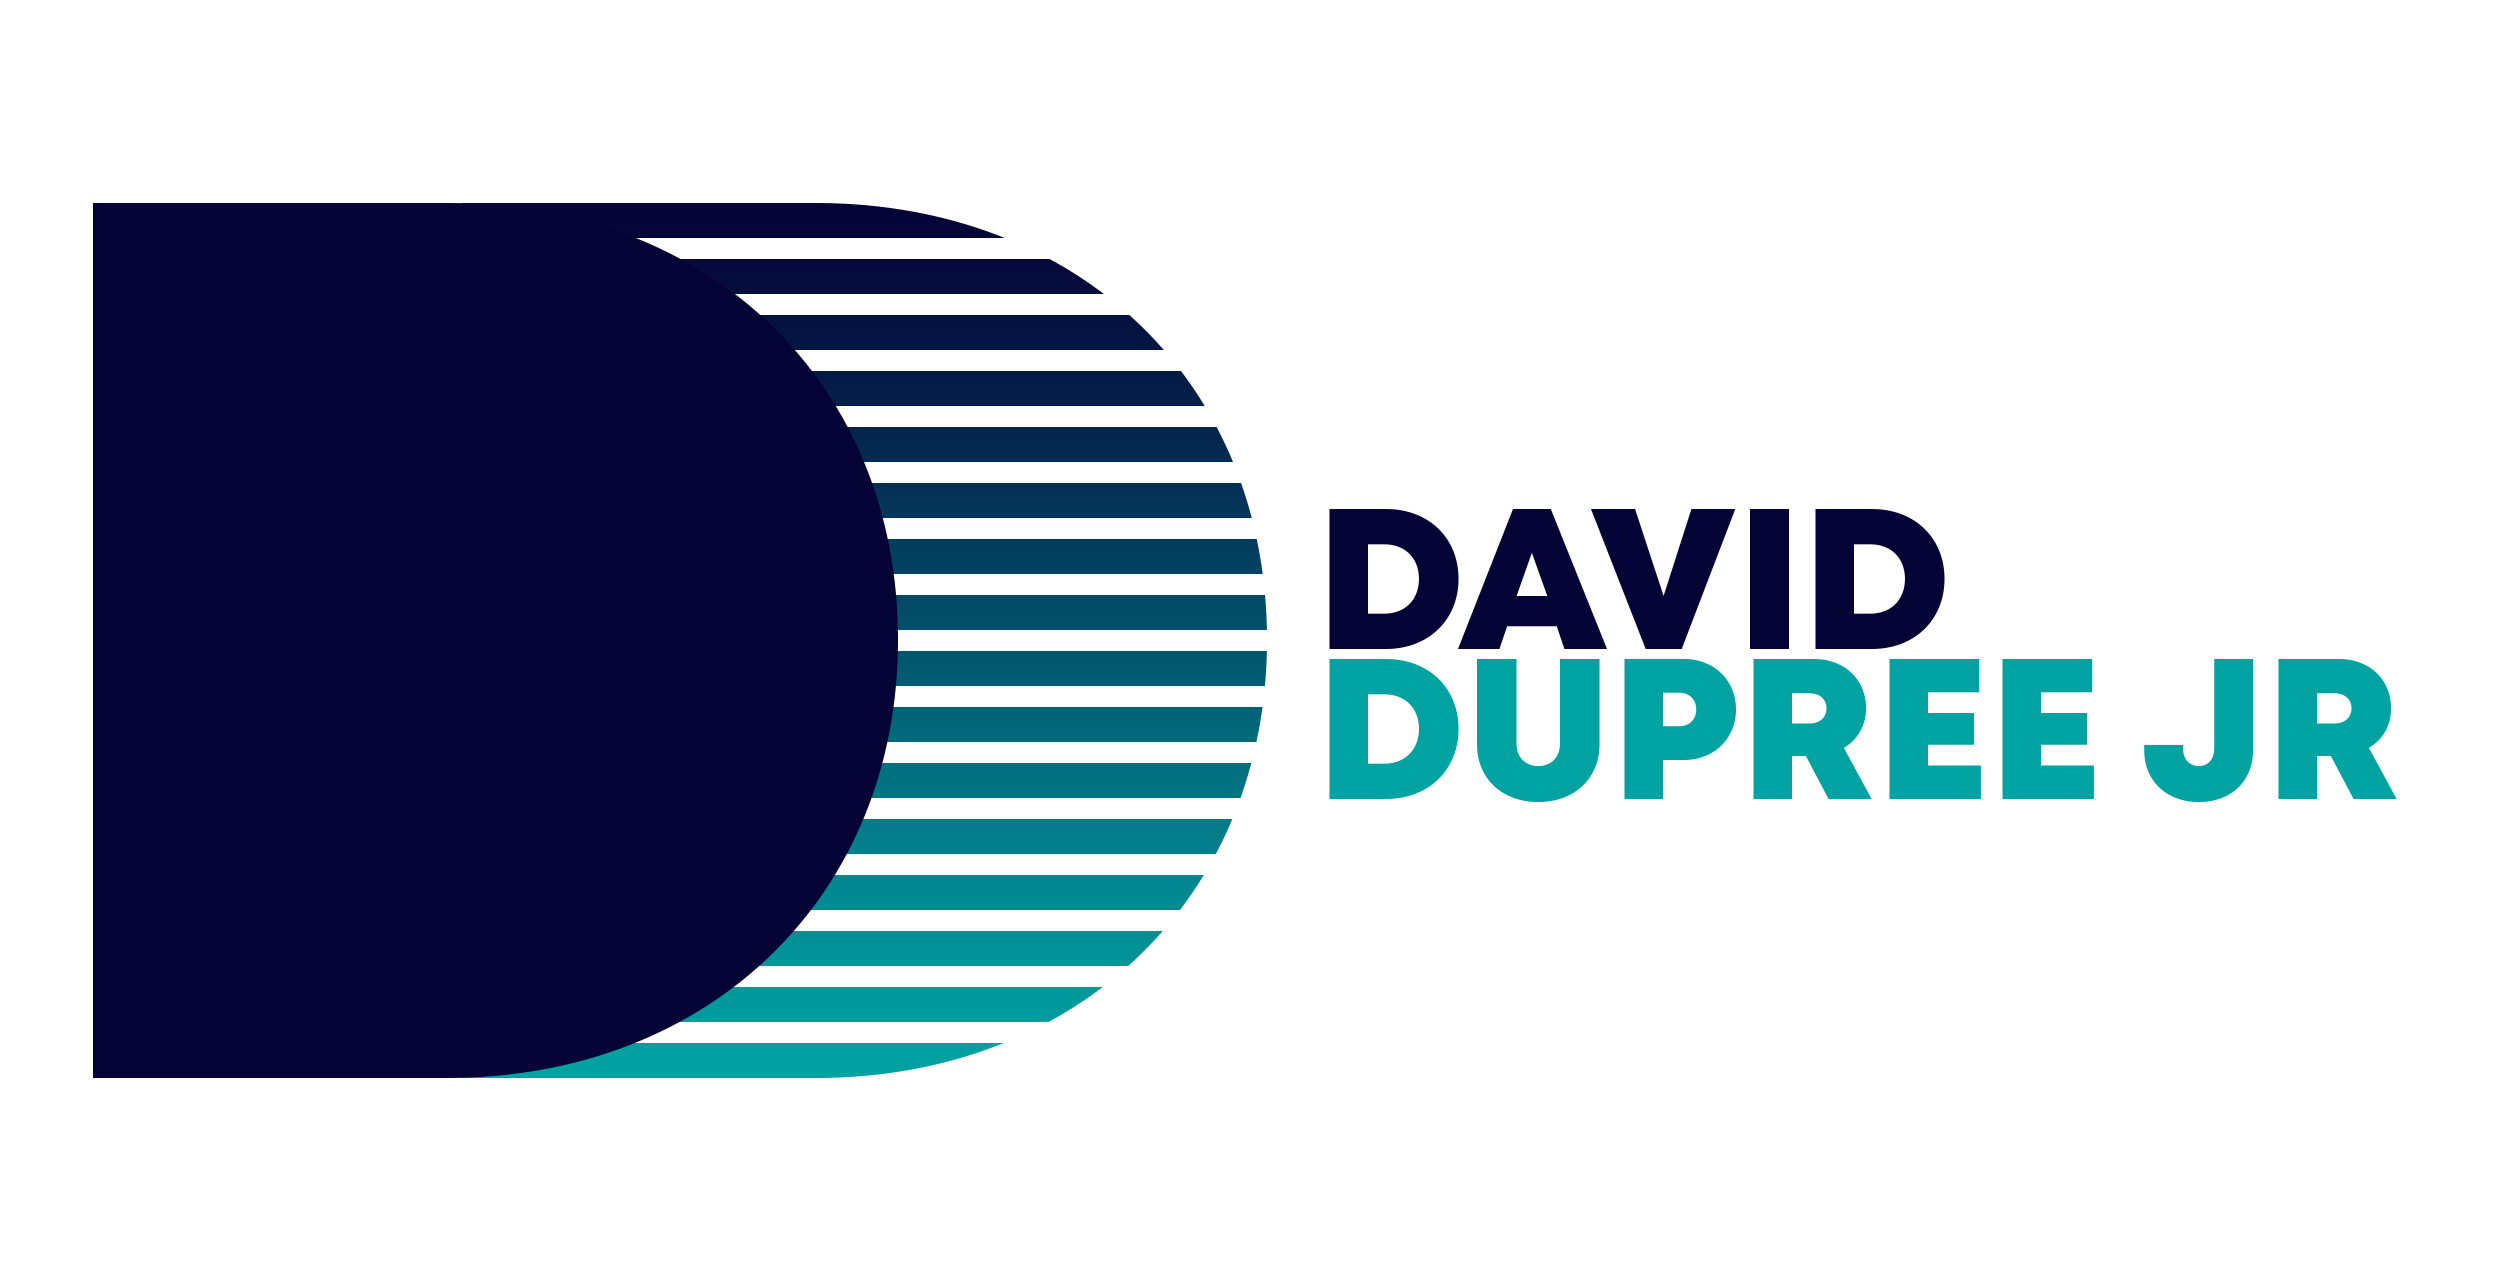 David Dupree Jr